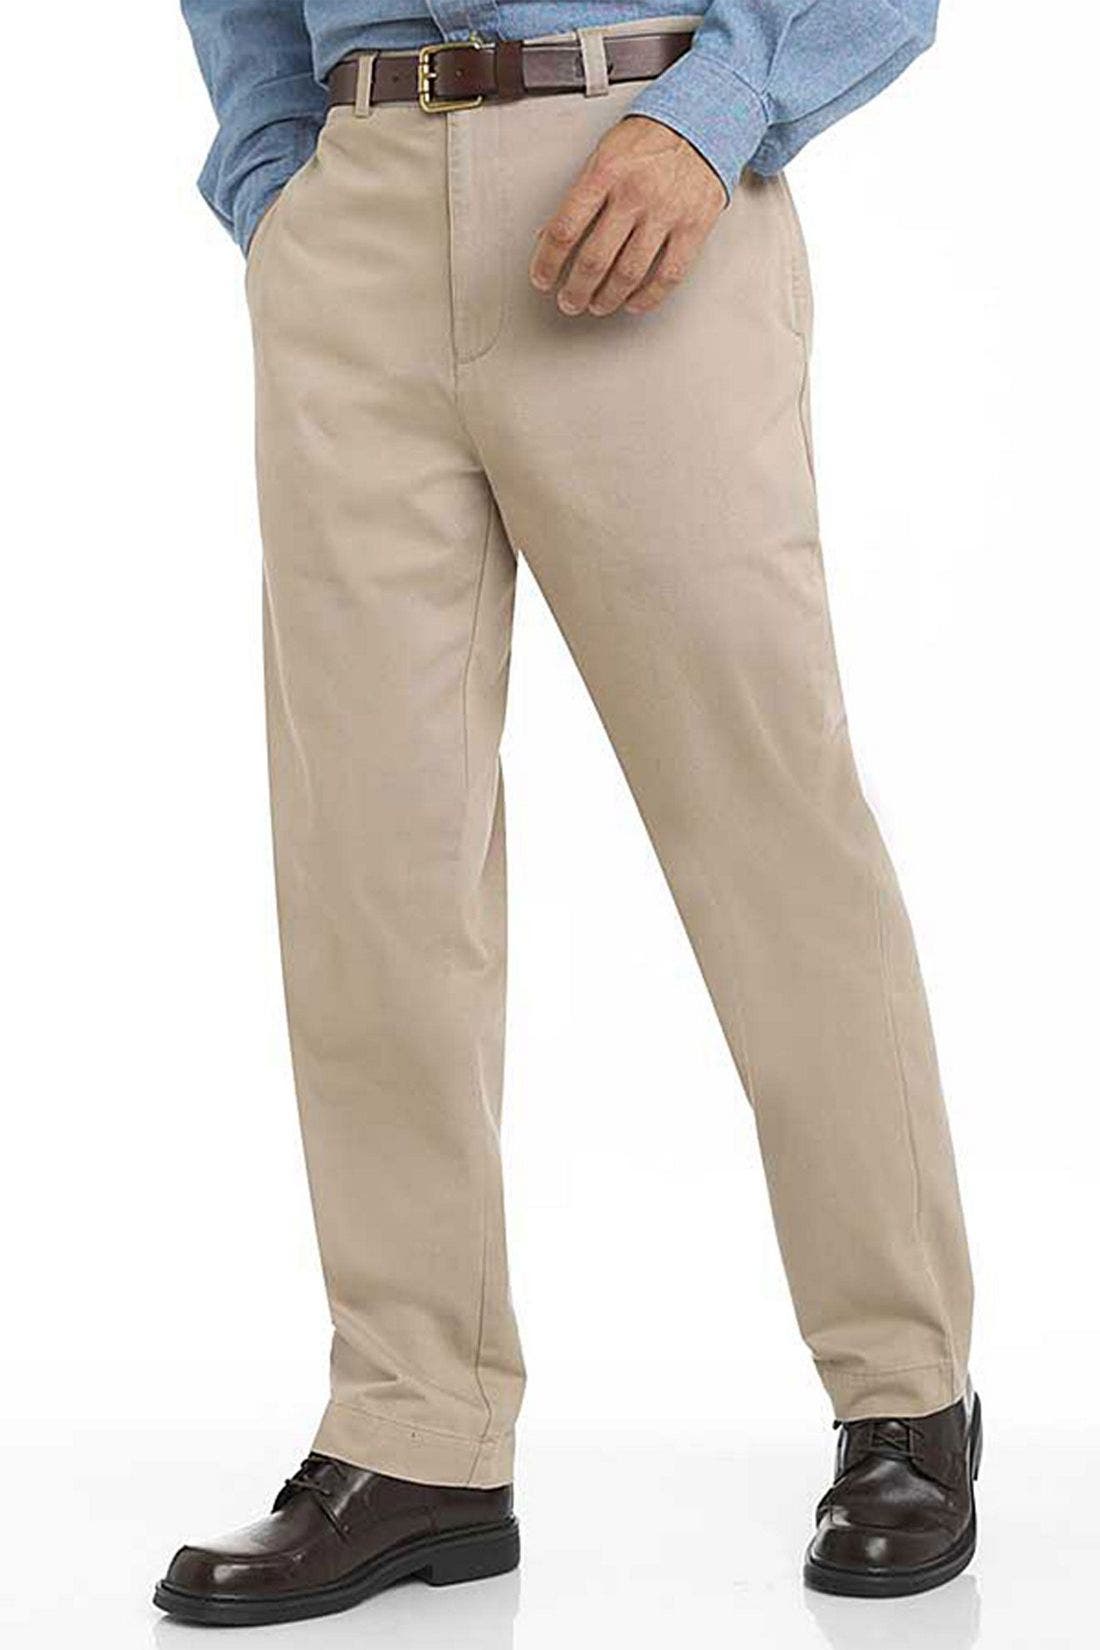 Polo Ralph Lauren 'Prospect' Pants 